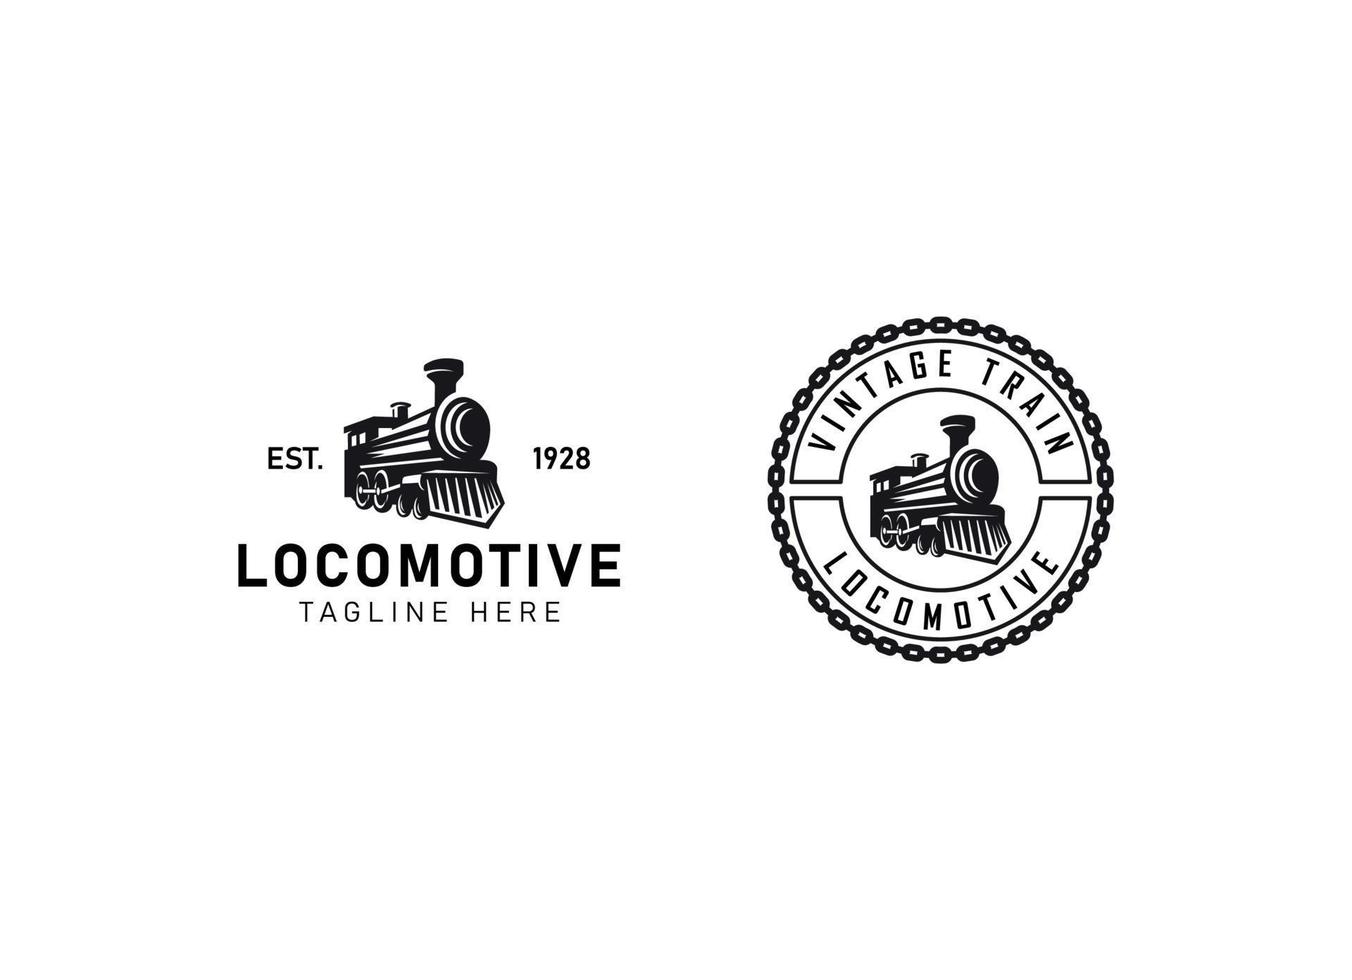 Locomotive logo illustration, vintage style emblem vector